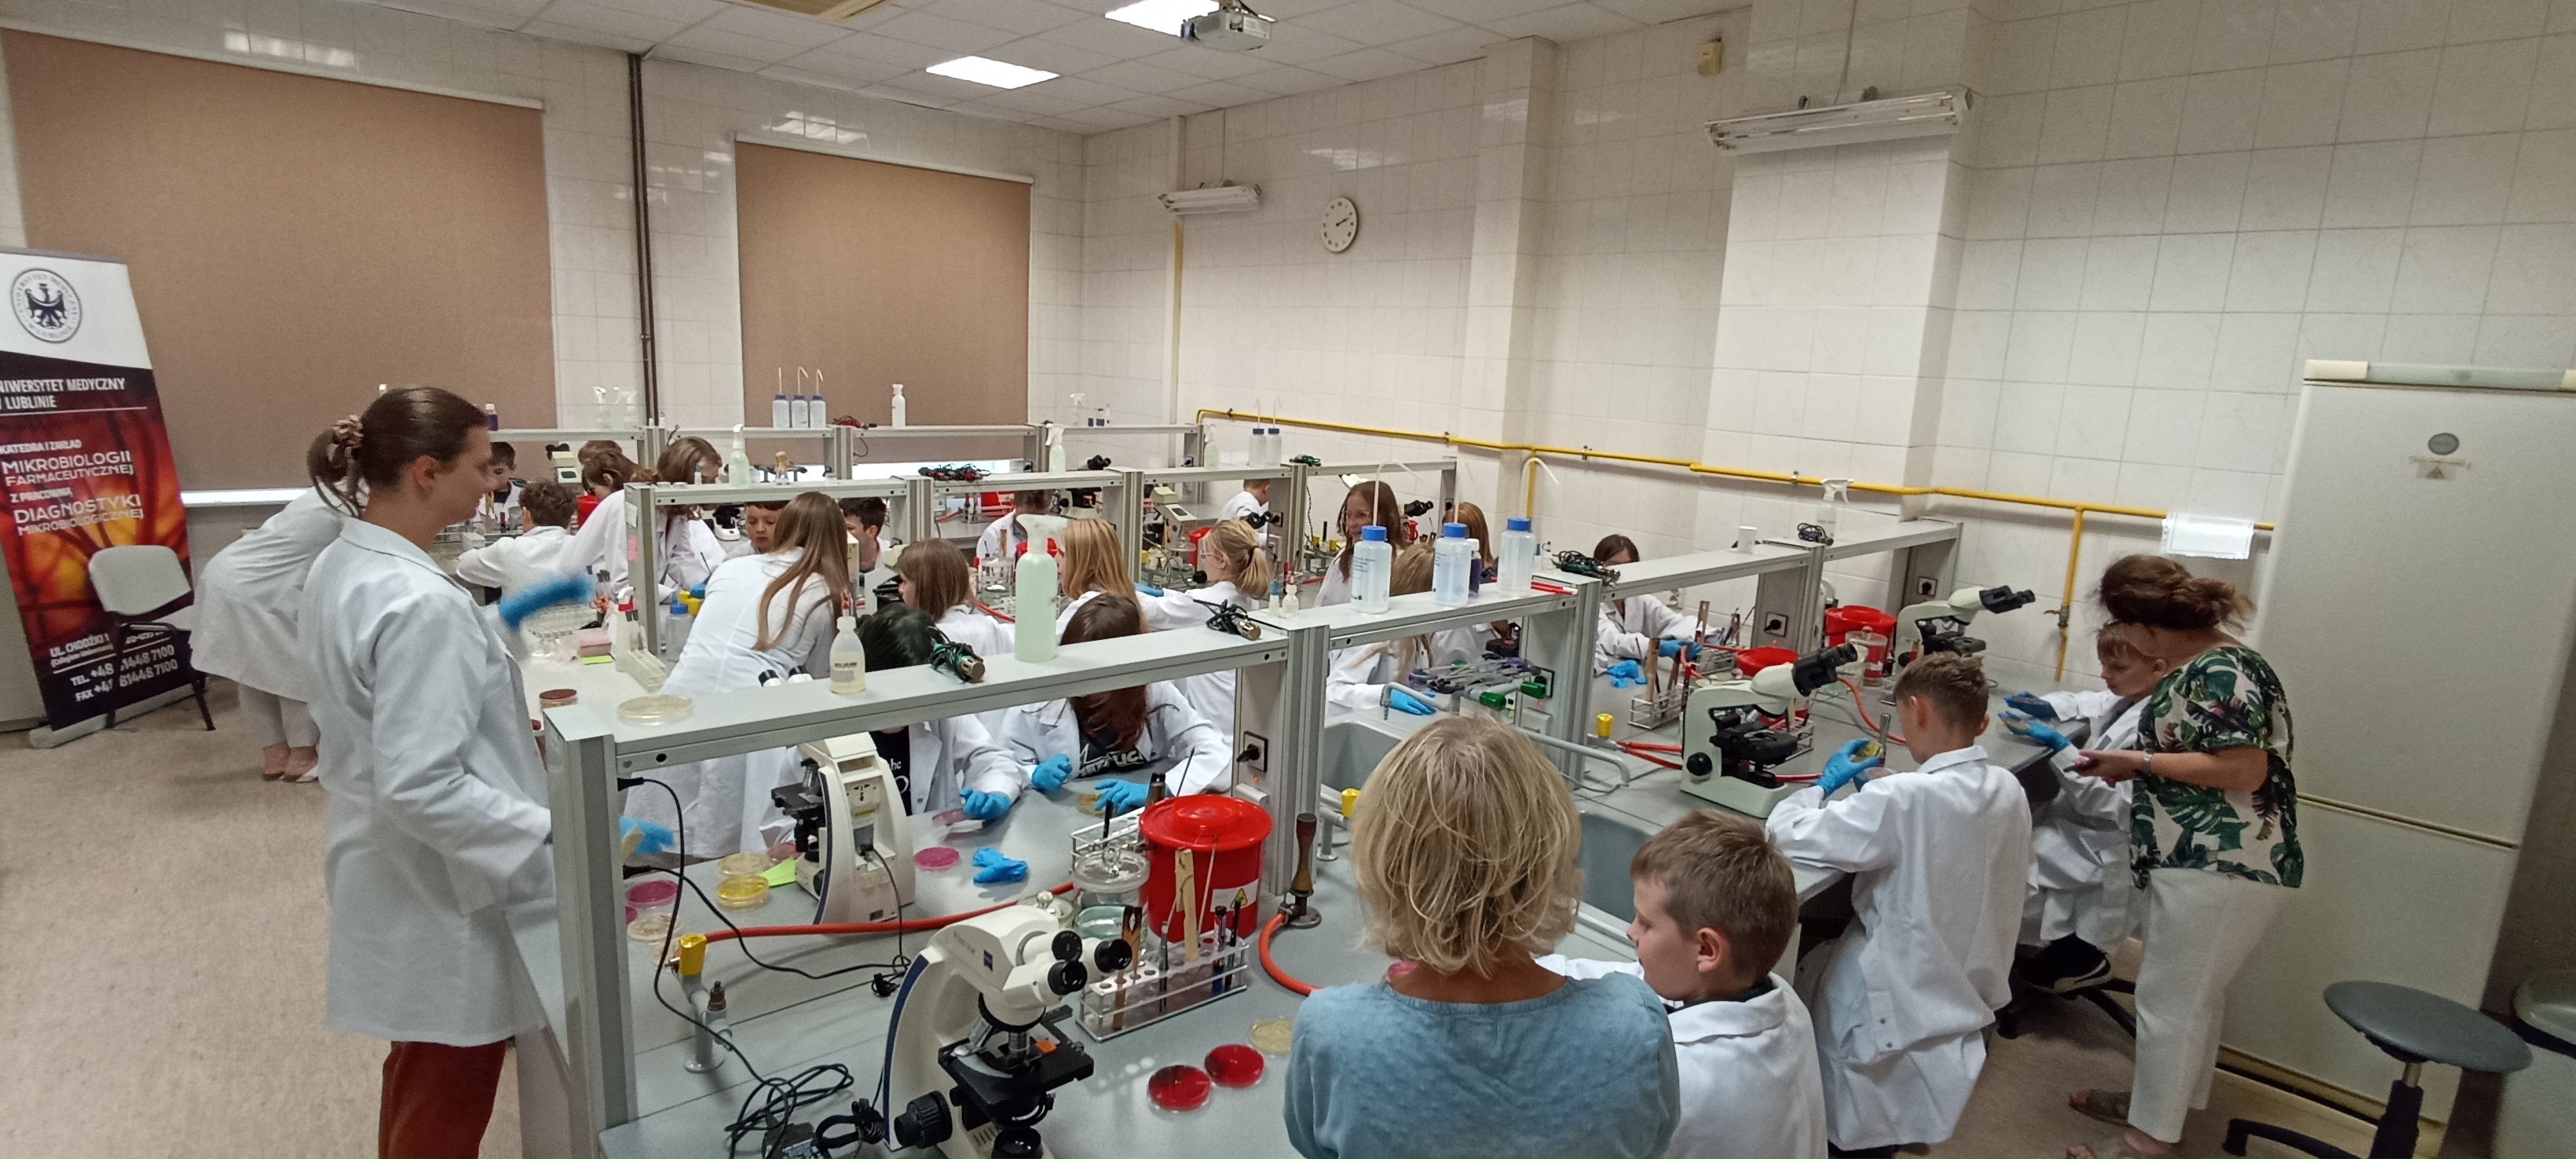 W laboratorium mikrobiologicznym jest dużo osób przy stanowiskach - studenci, dzieci i dydaktycy.